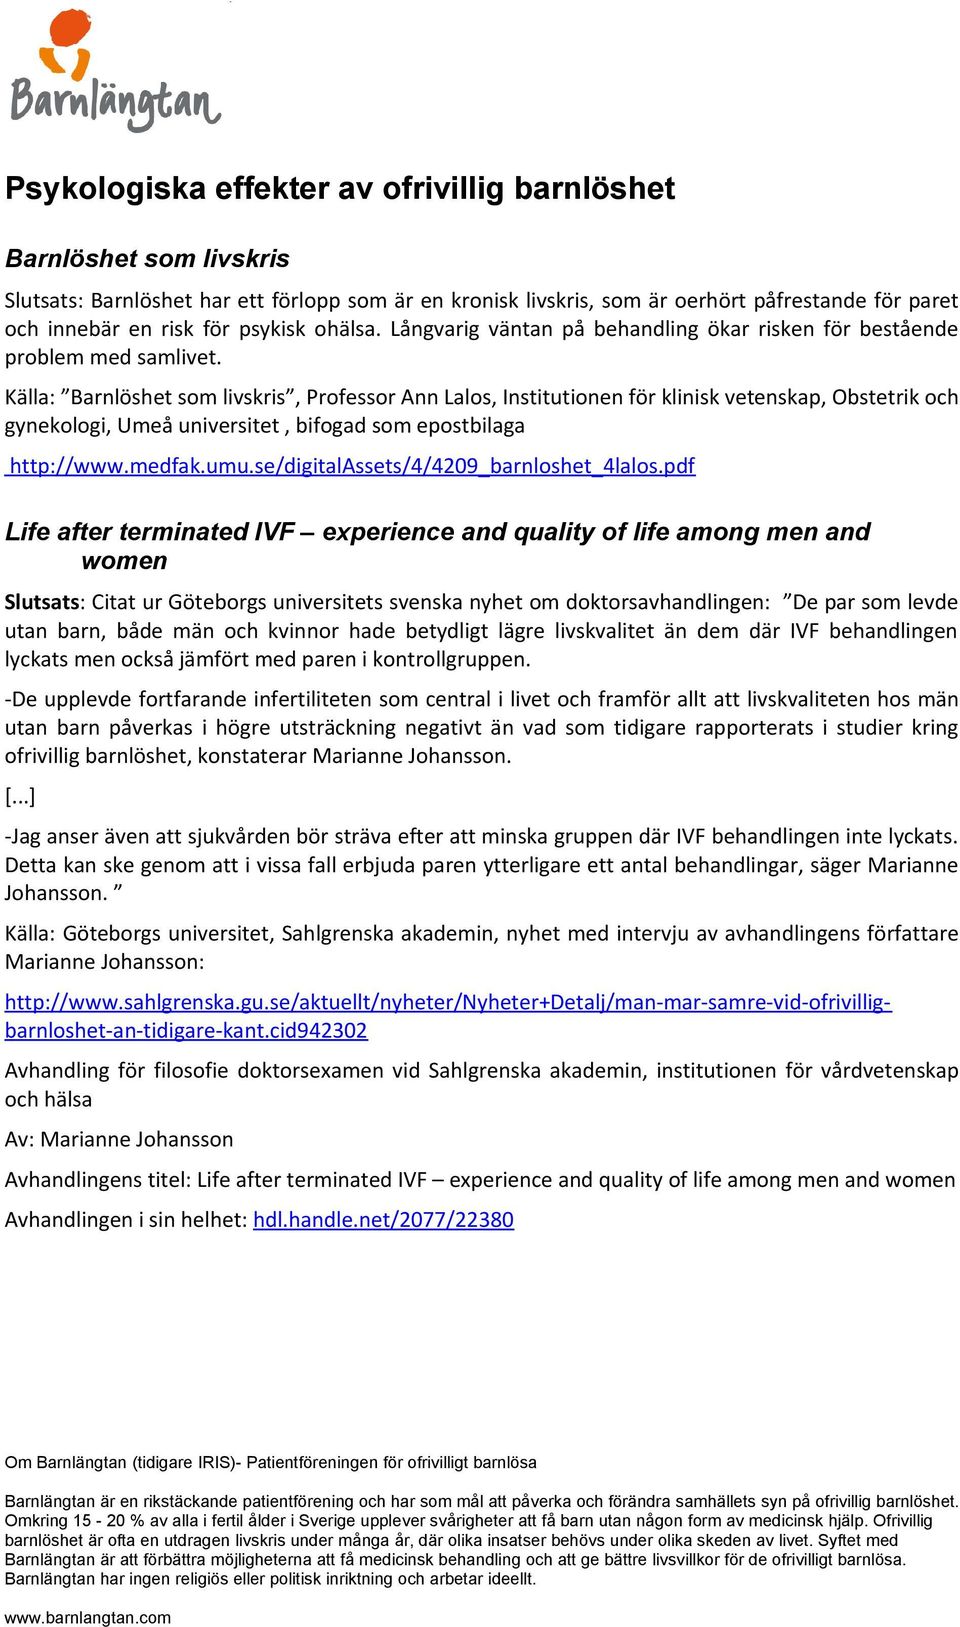 Källa: Barnlöshet som livskris, Professor Ann Lalos, Institutionen för klinisk vetenskap, Obstetrik och gynekologi, Umeå universitet, bifogad som epostbilaga http://www.medfak.umu.